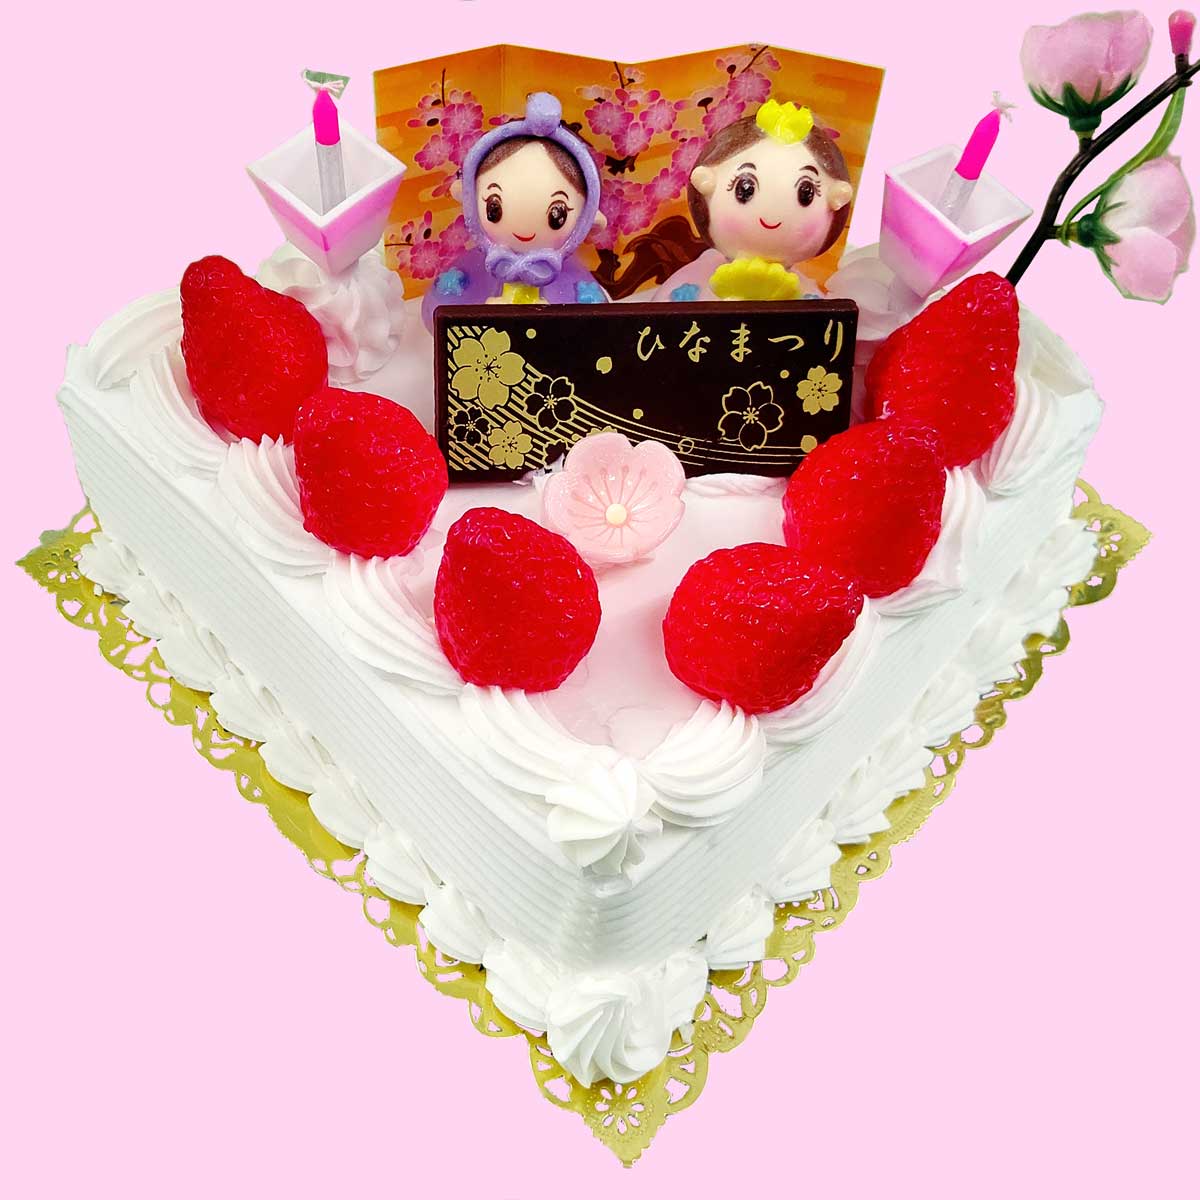 メインページ 素材にこだわった手作りケーキのお店 洋菓子工房いわもと 千葉県松戸市